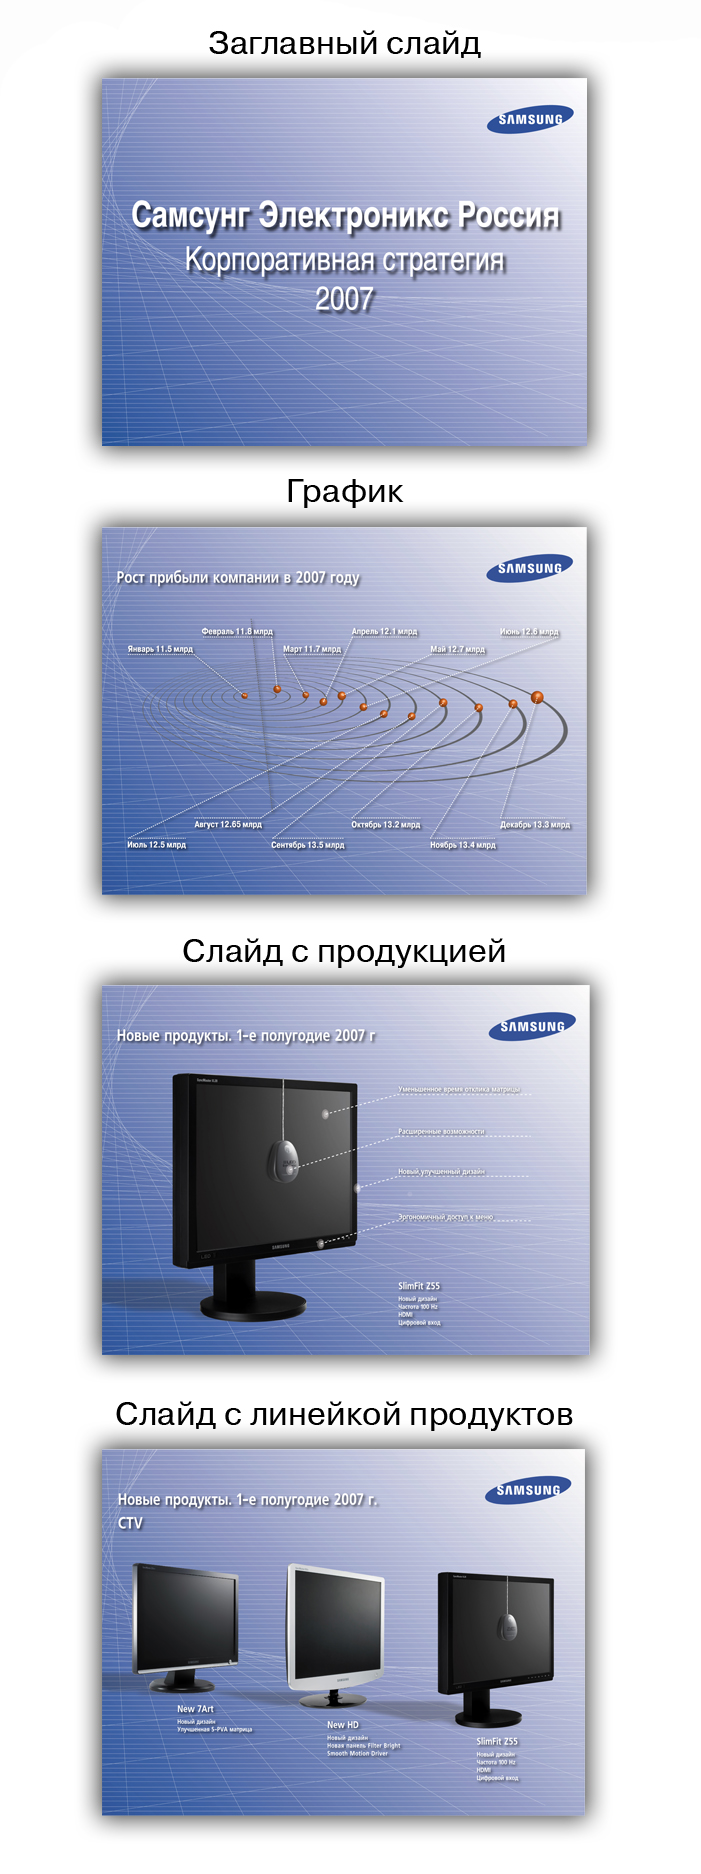 Samsung, вариант 2